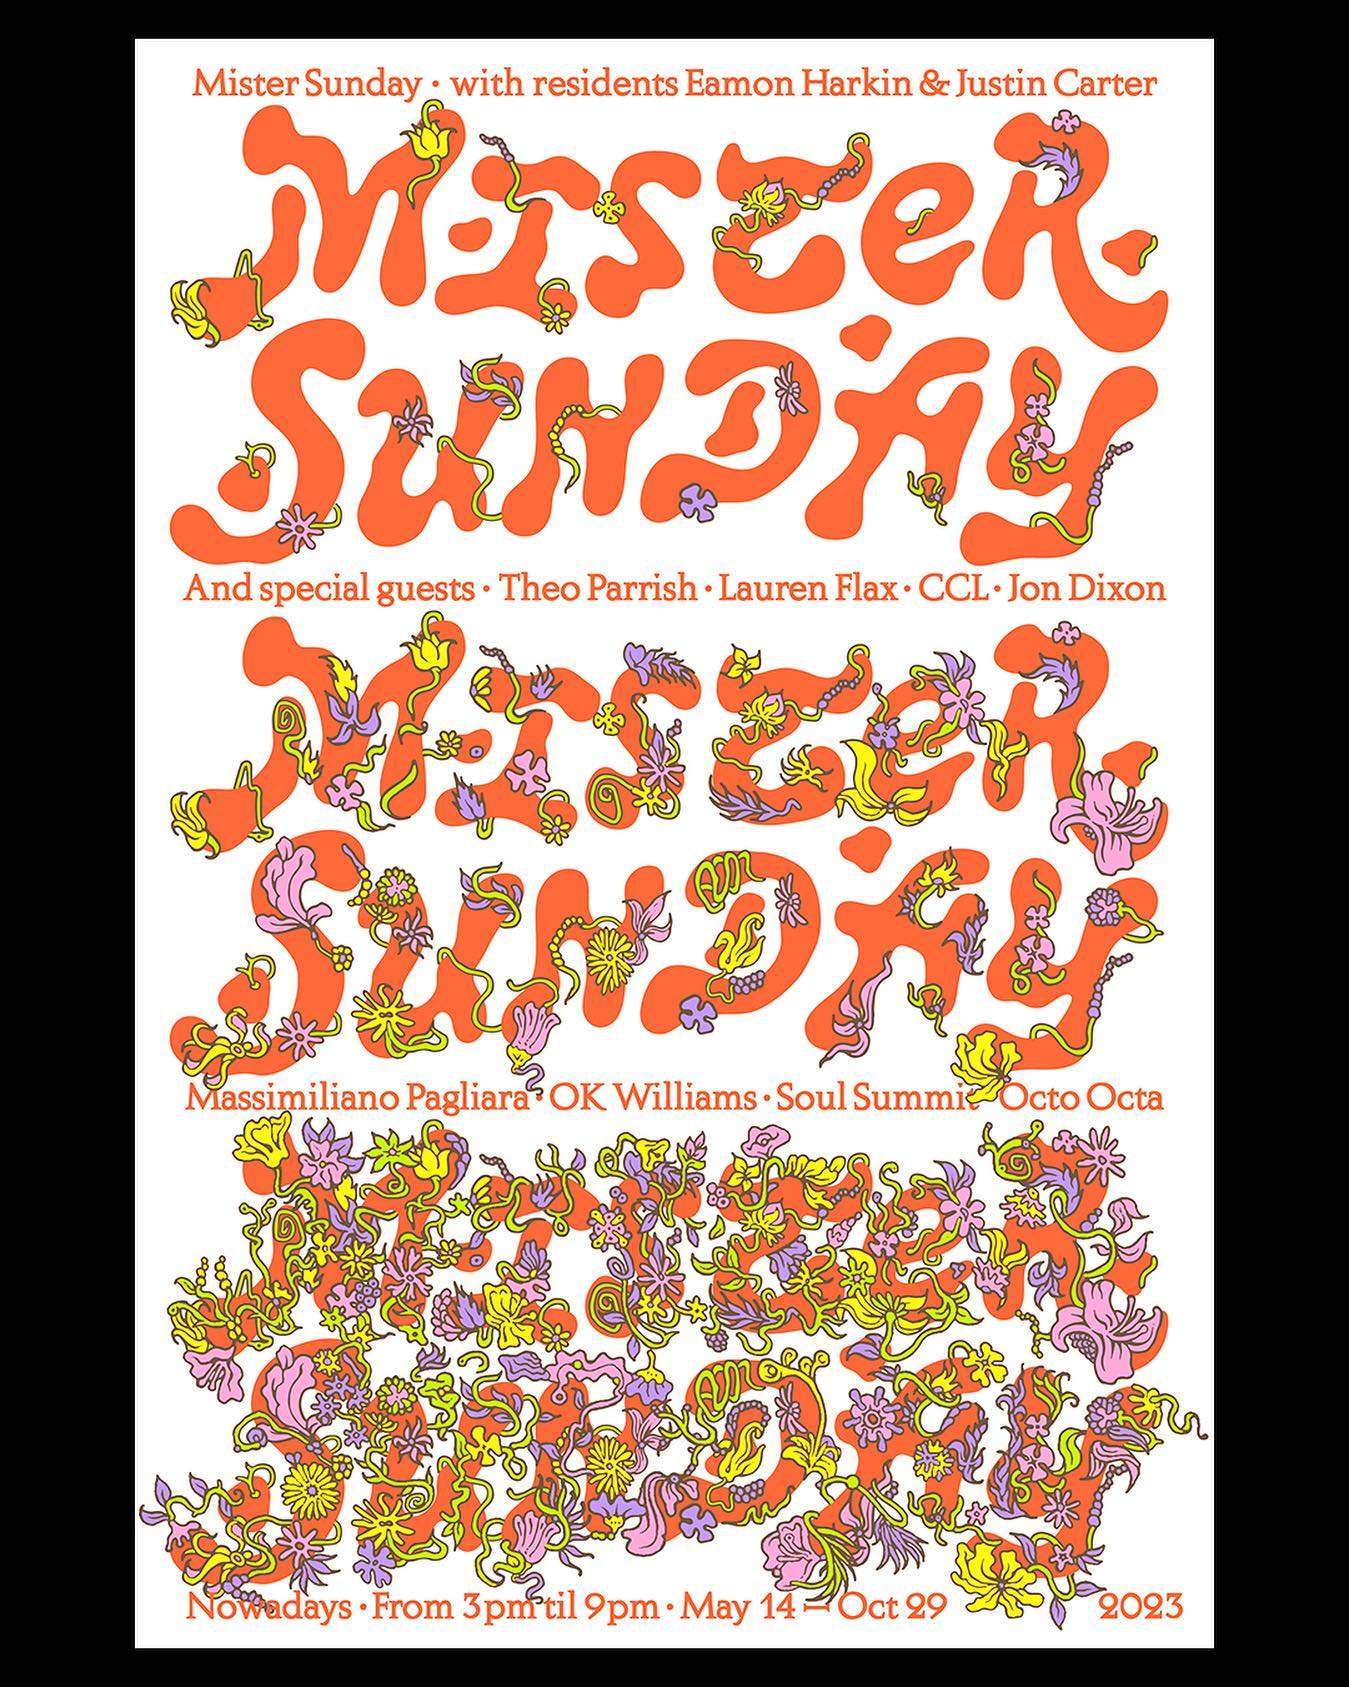 Mister Sunday by Noah Baker